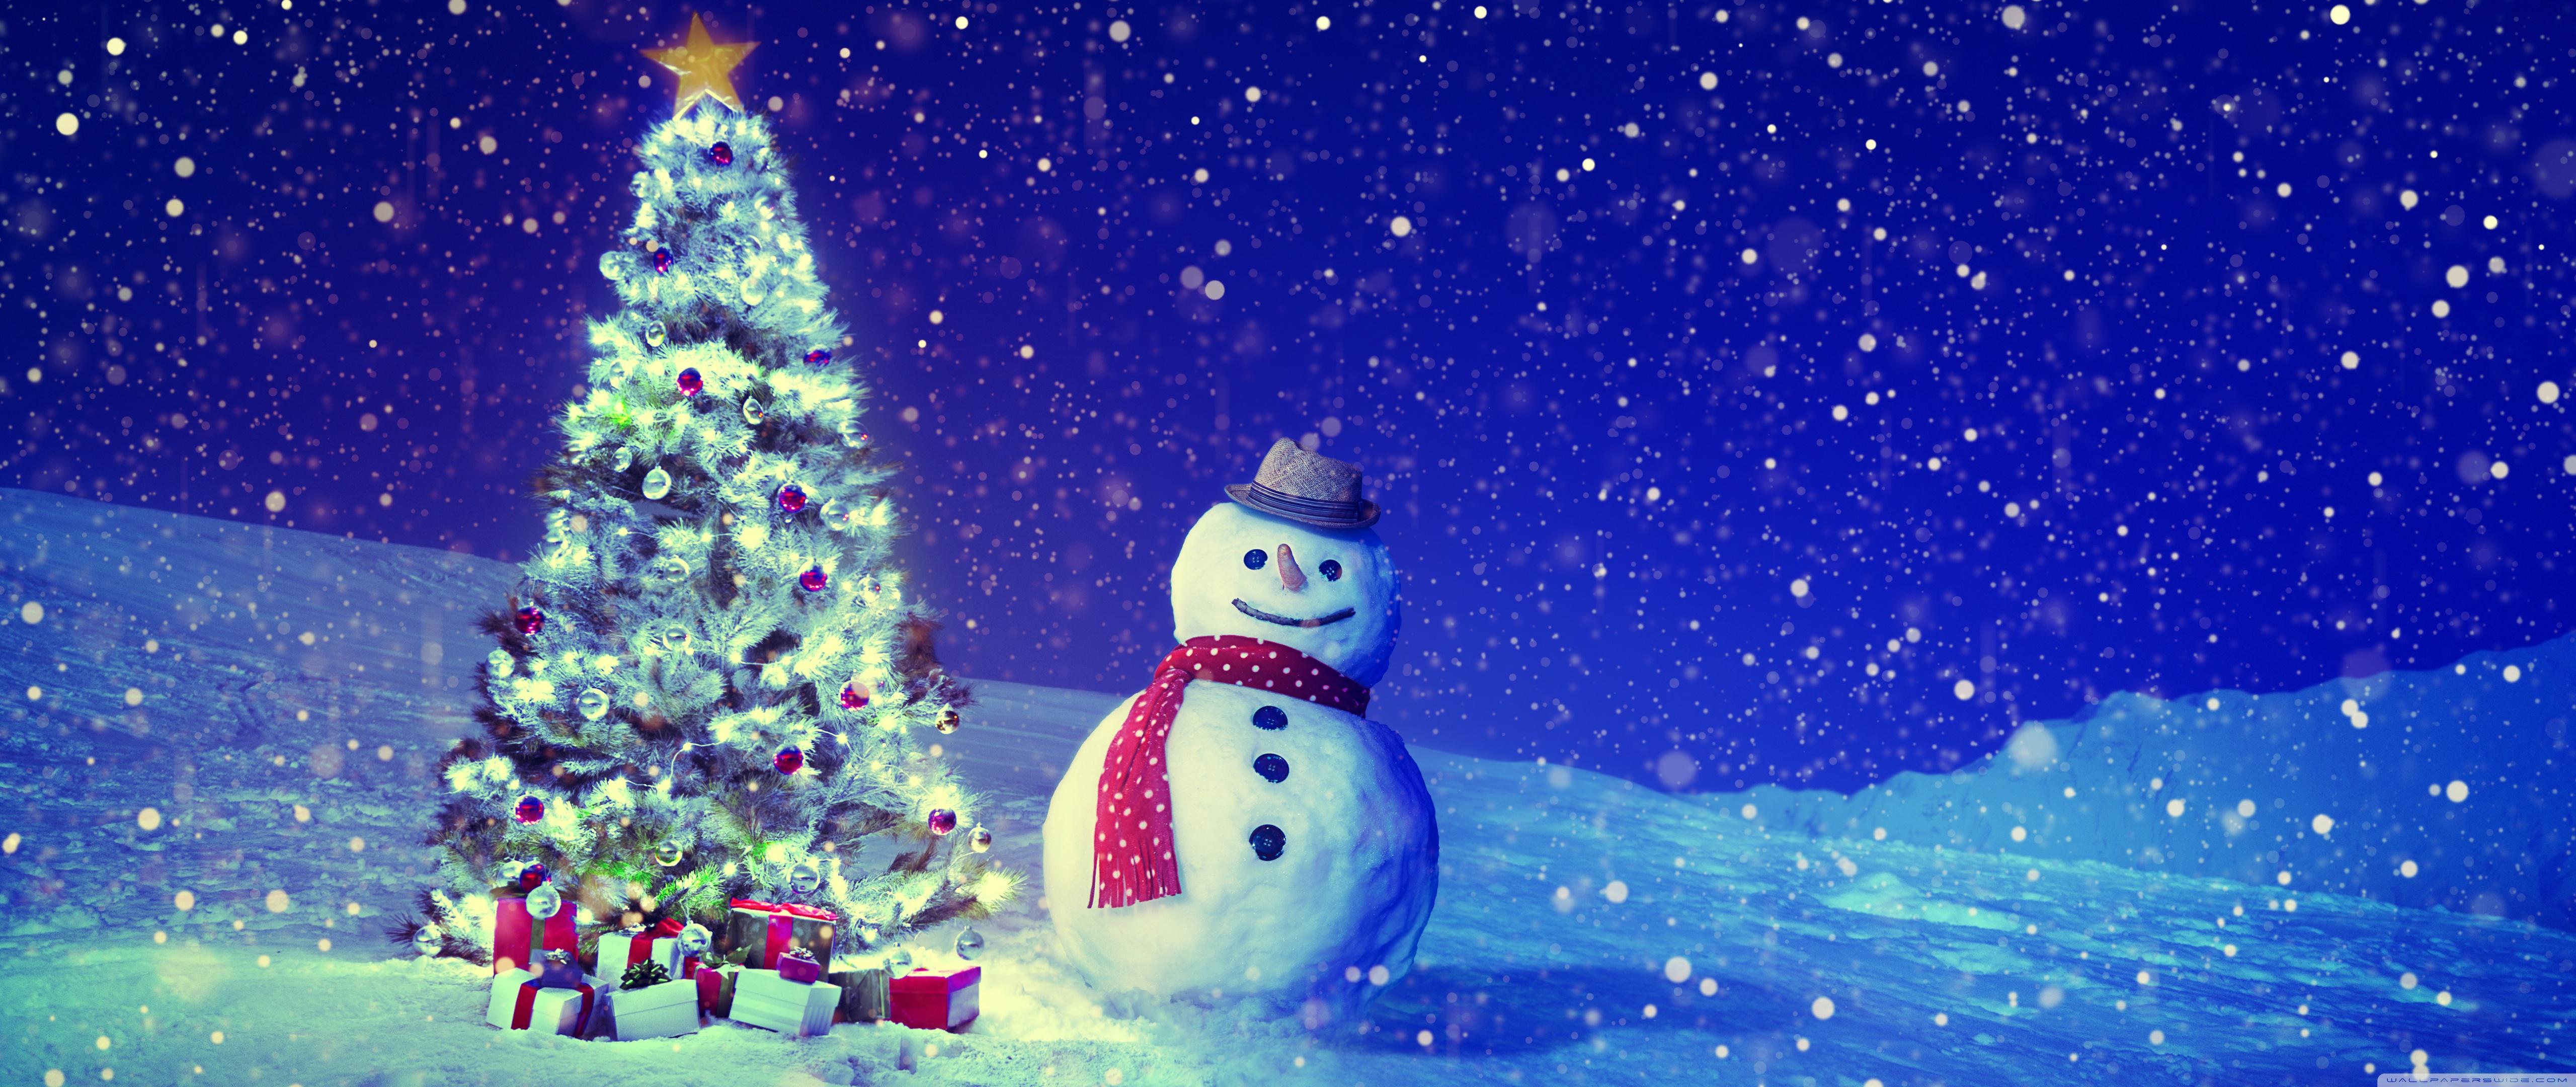 Christmas Tree, Snowman, Winter Landscape Ultra HD Desktop